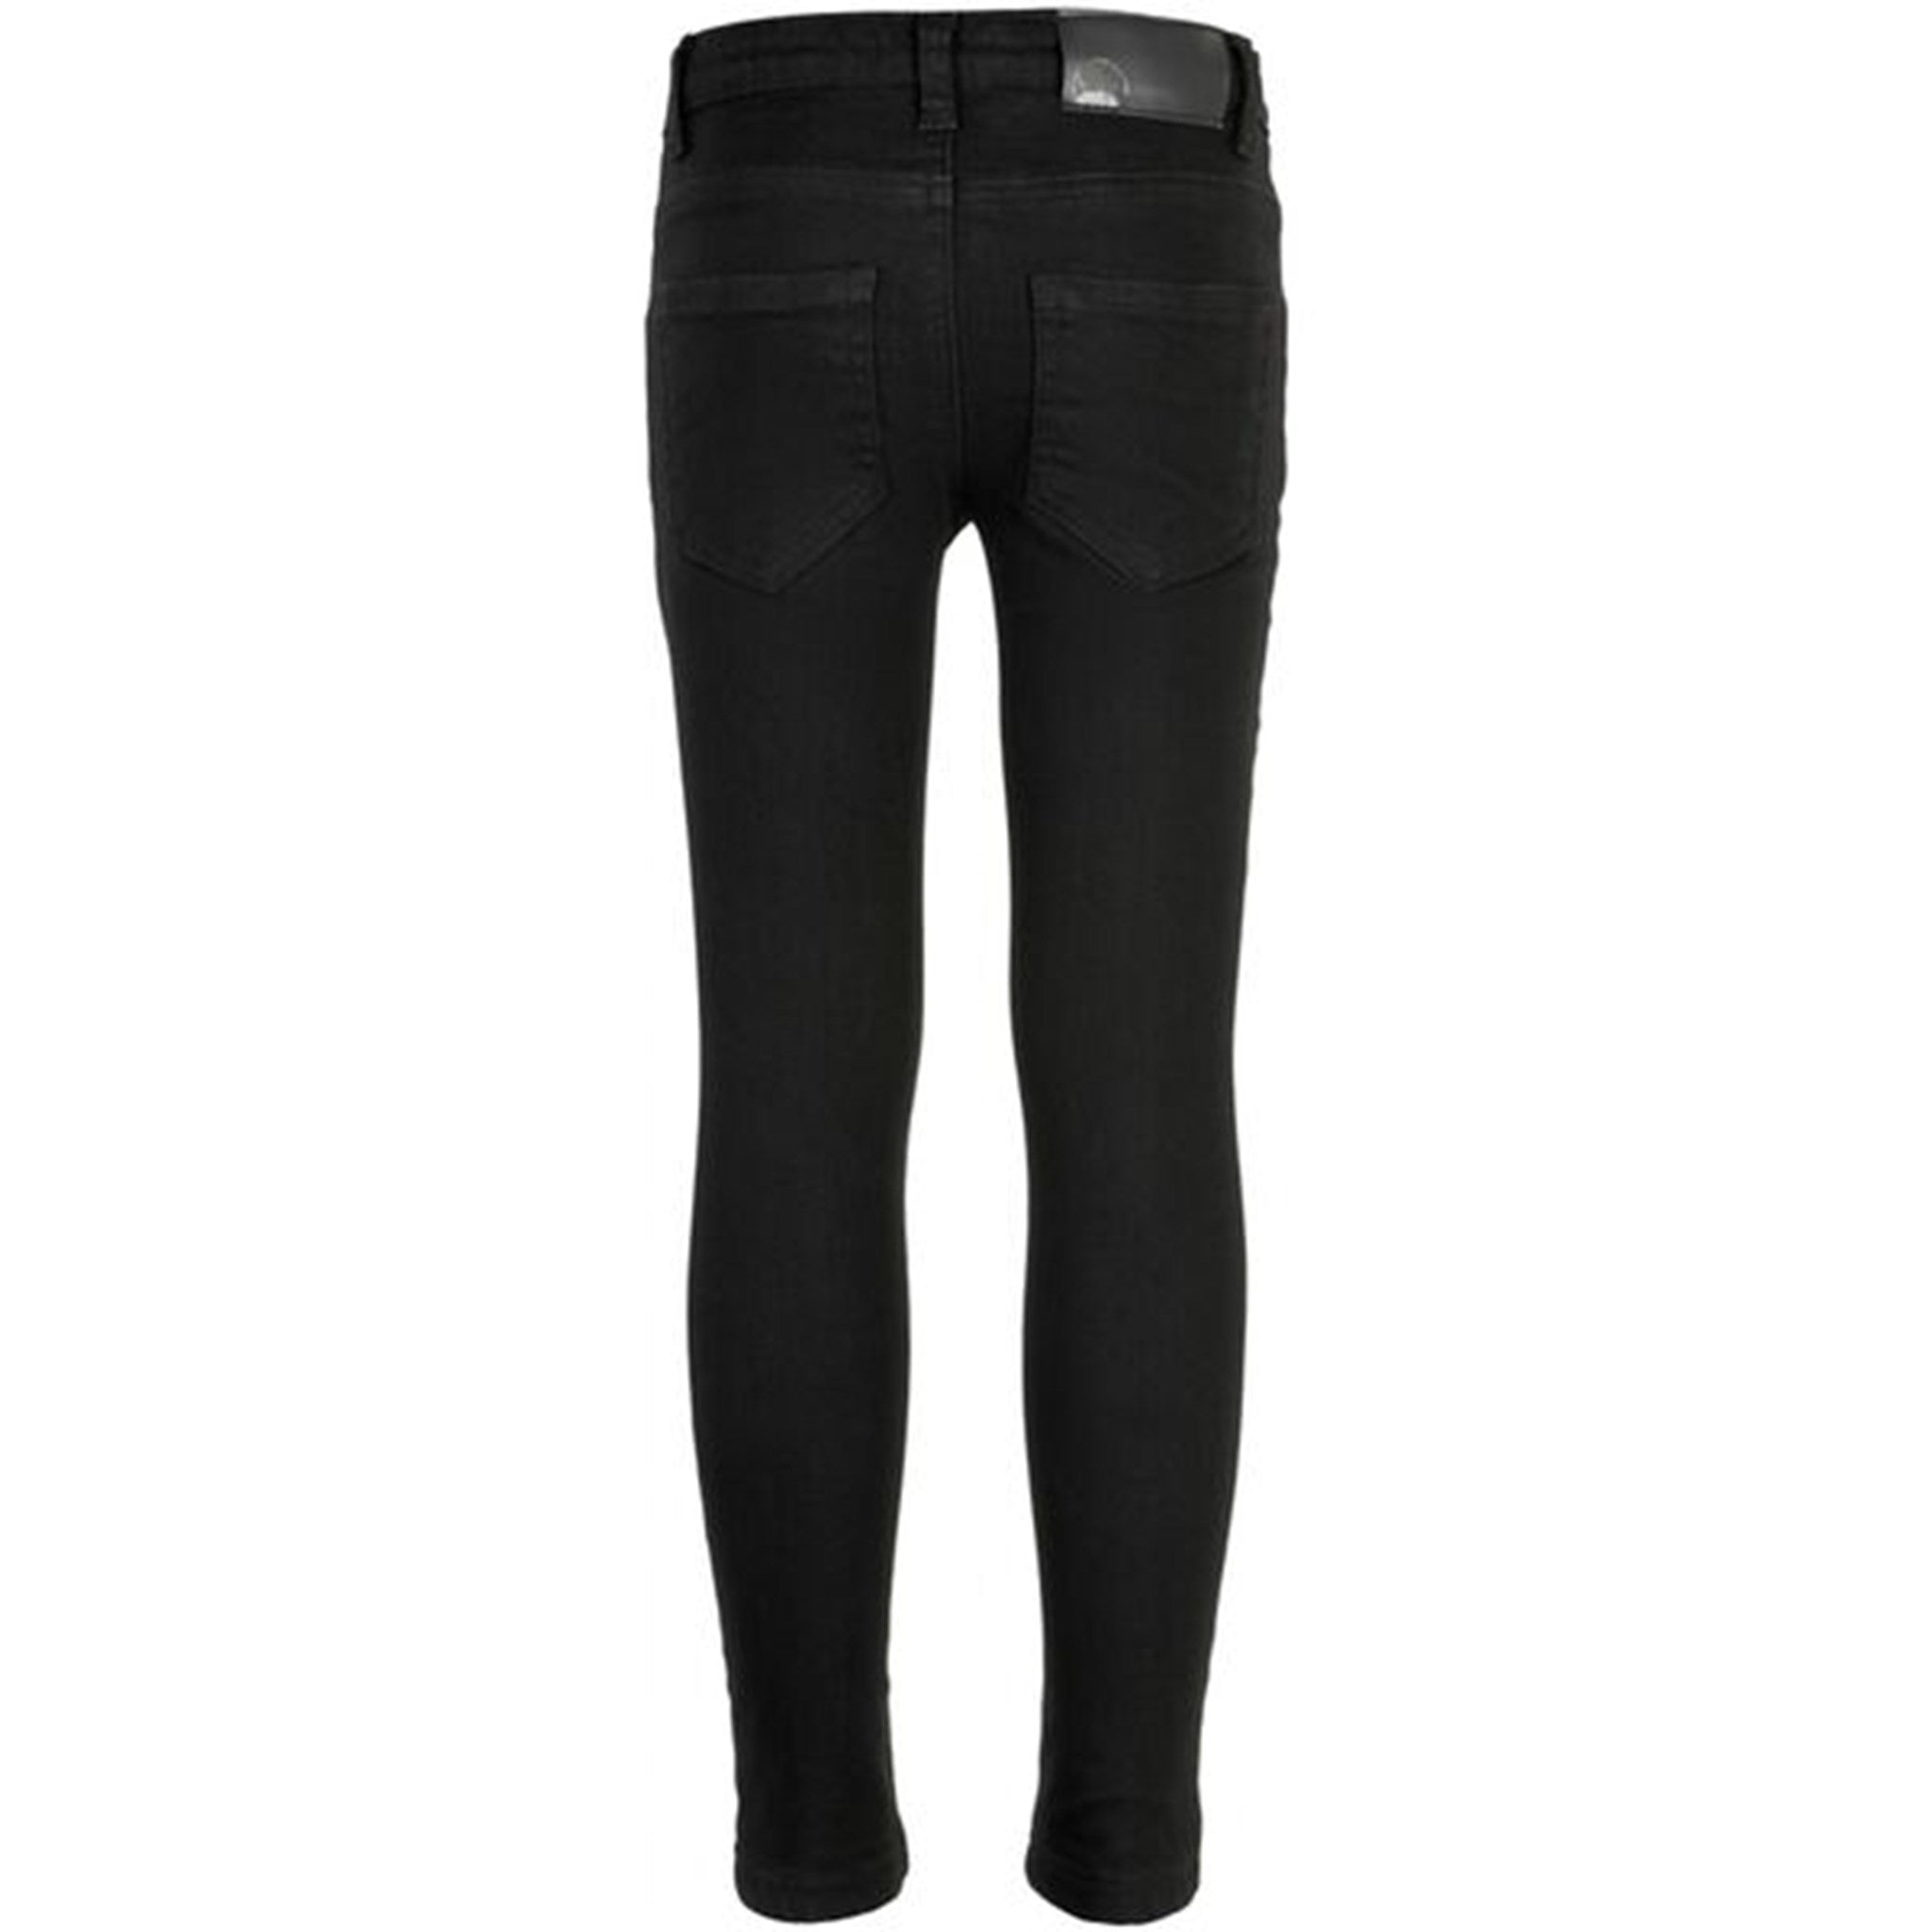 The New Oslo Super Slim Jeans Black 2